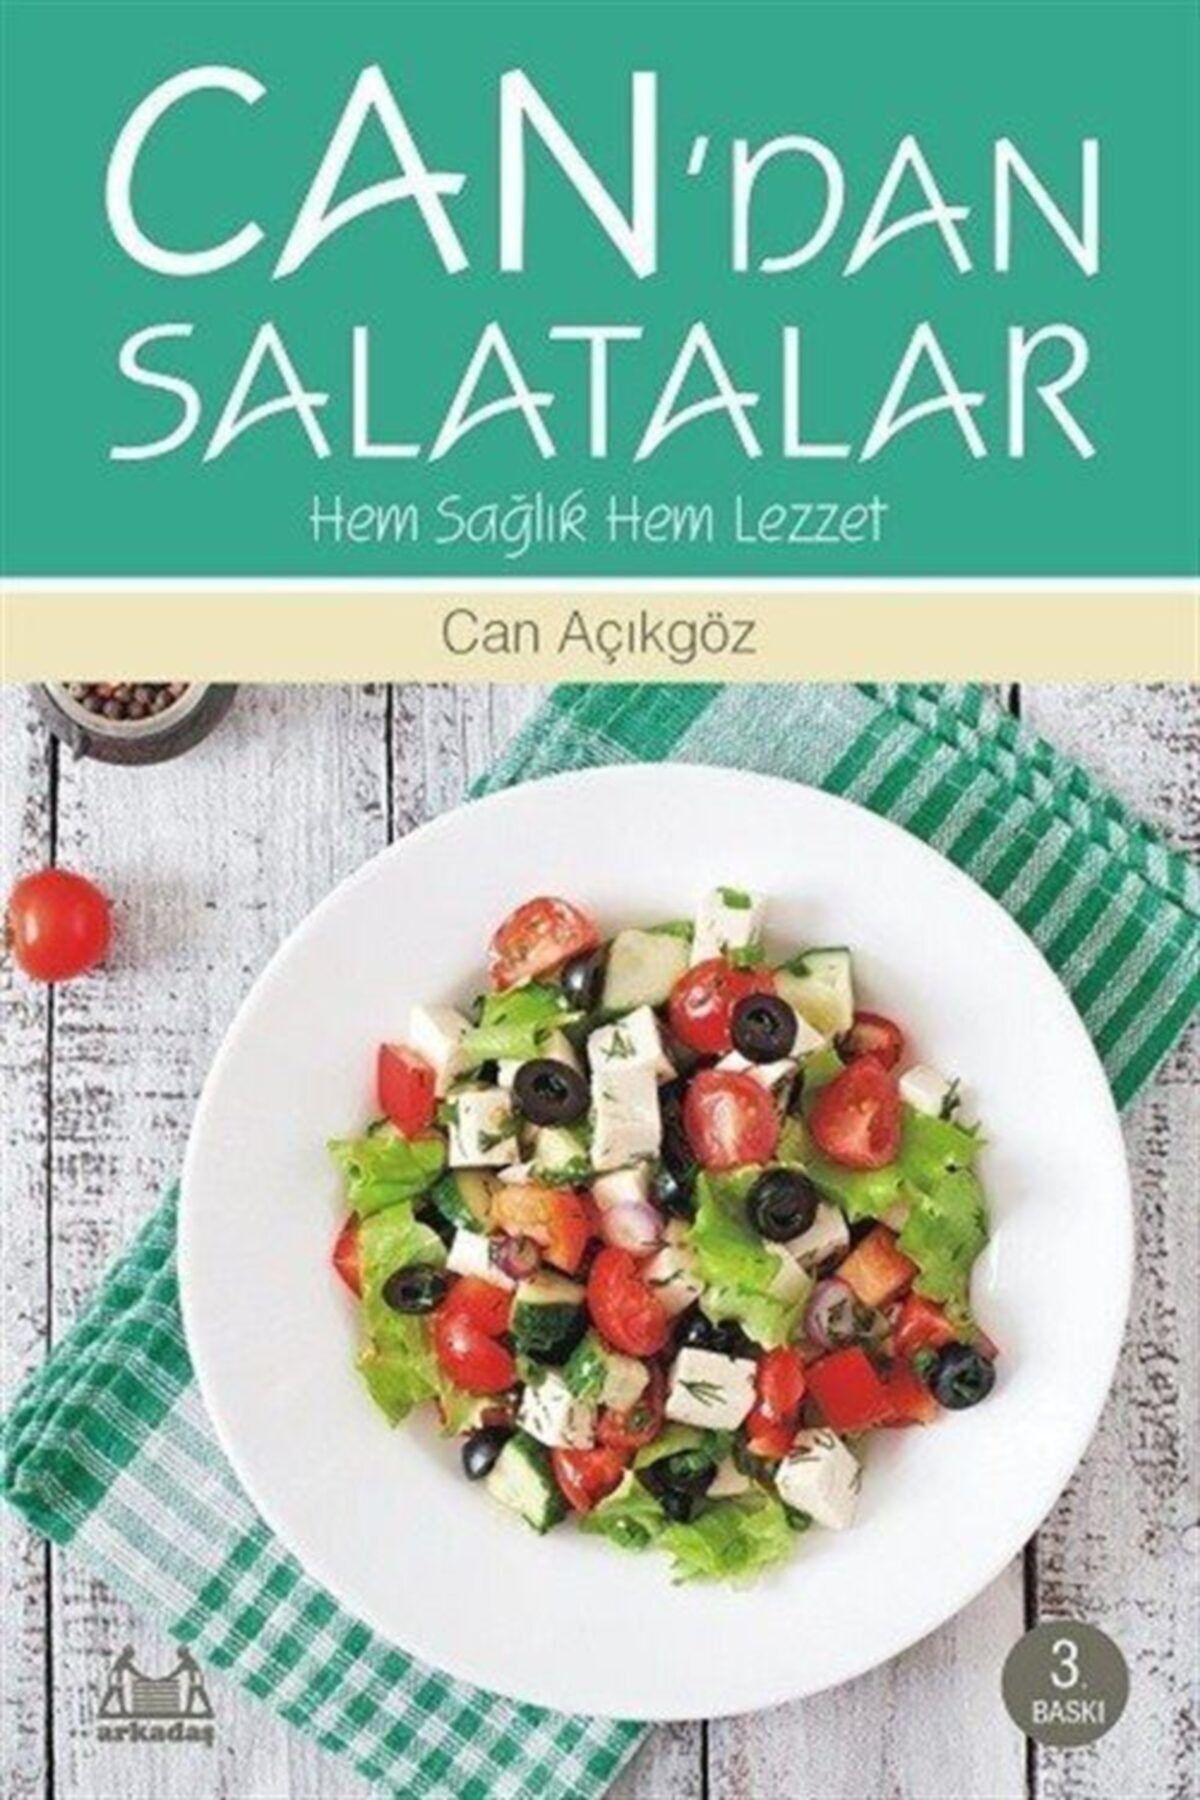 Arkadaş Yayıncılık Can'dan Salatalar & Hem Sağlık Hem Lezzet - Can Açıkgöz